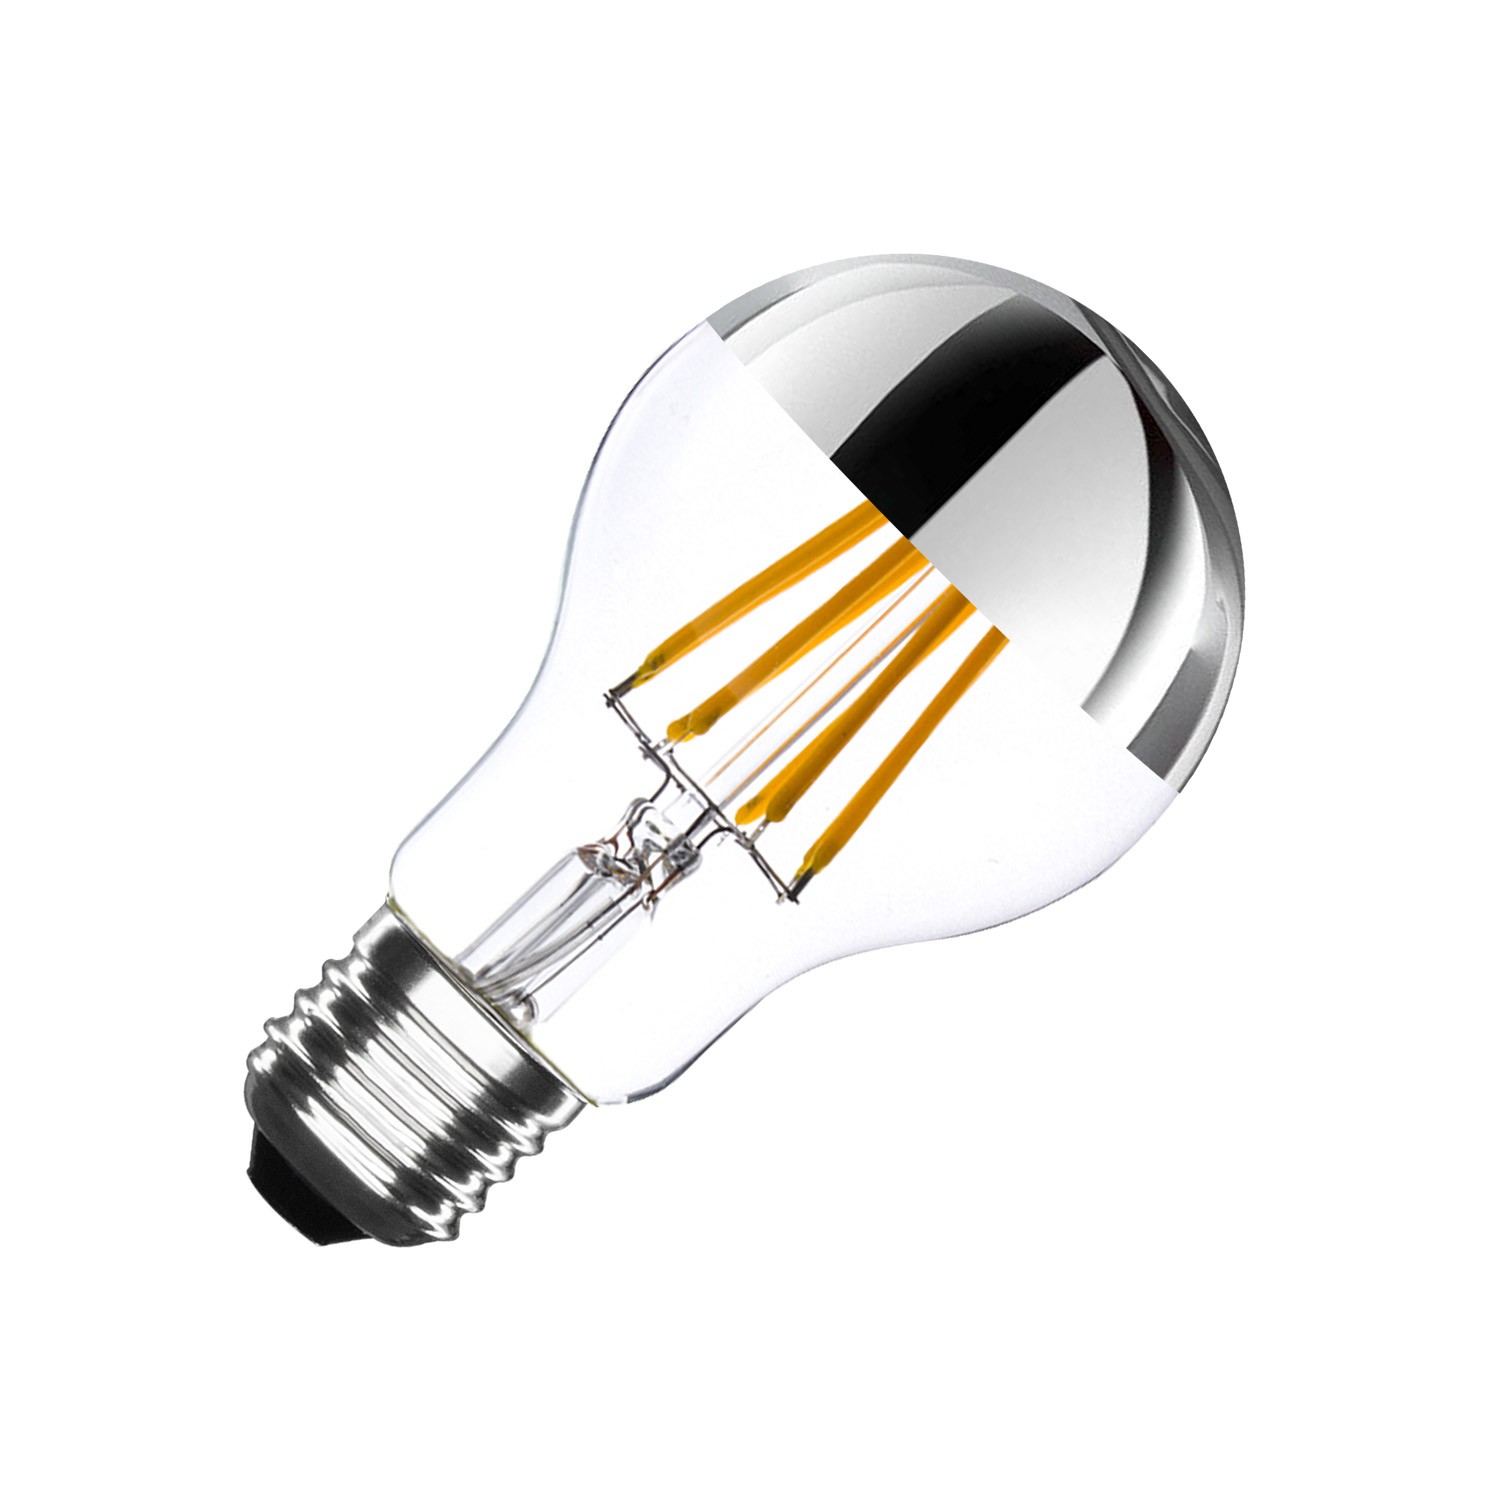 Ampoules LED douilles E27 en qualité supérieure de Paulmann